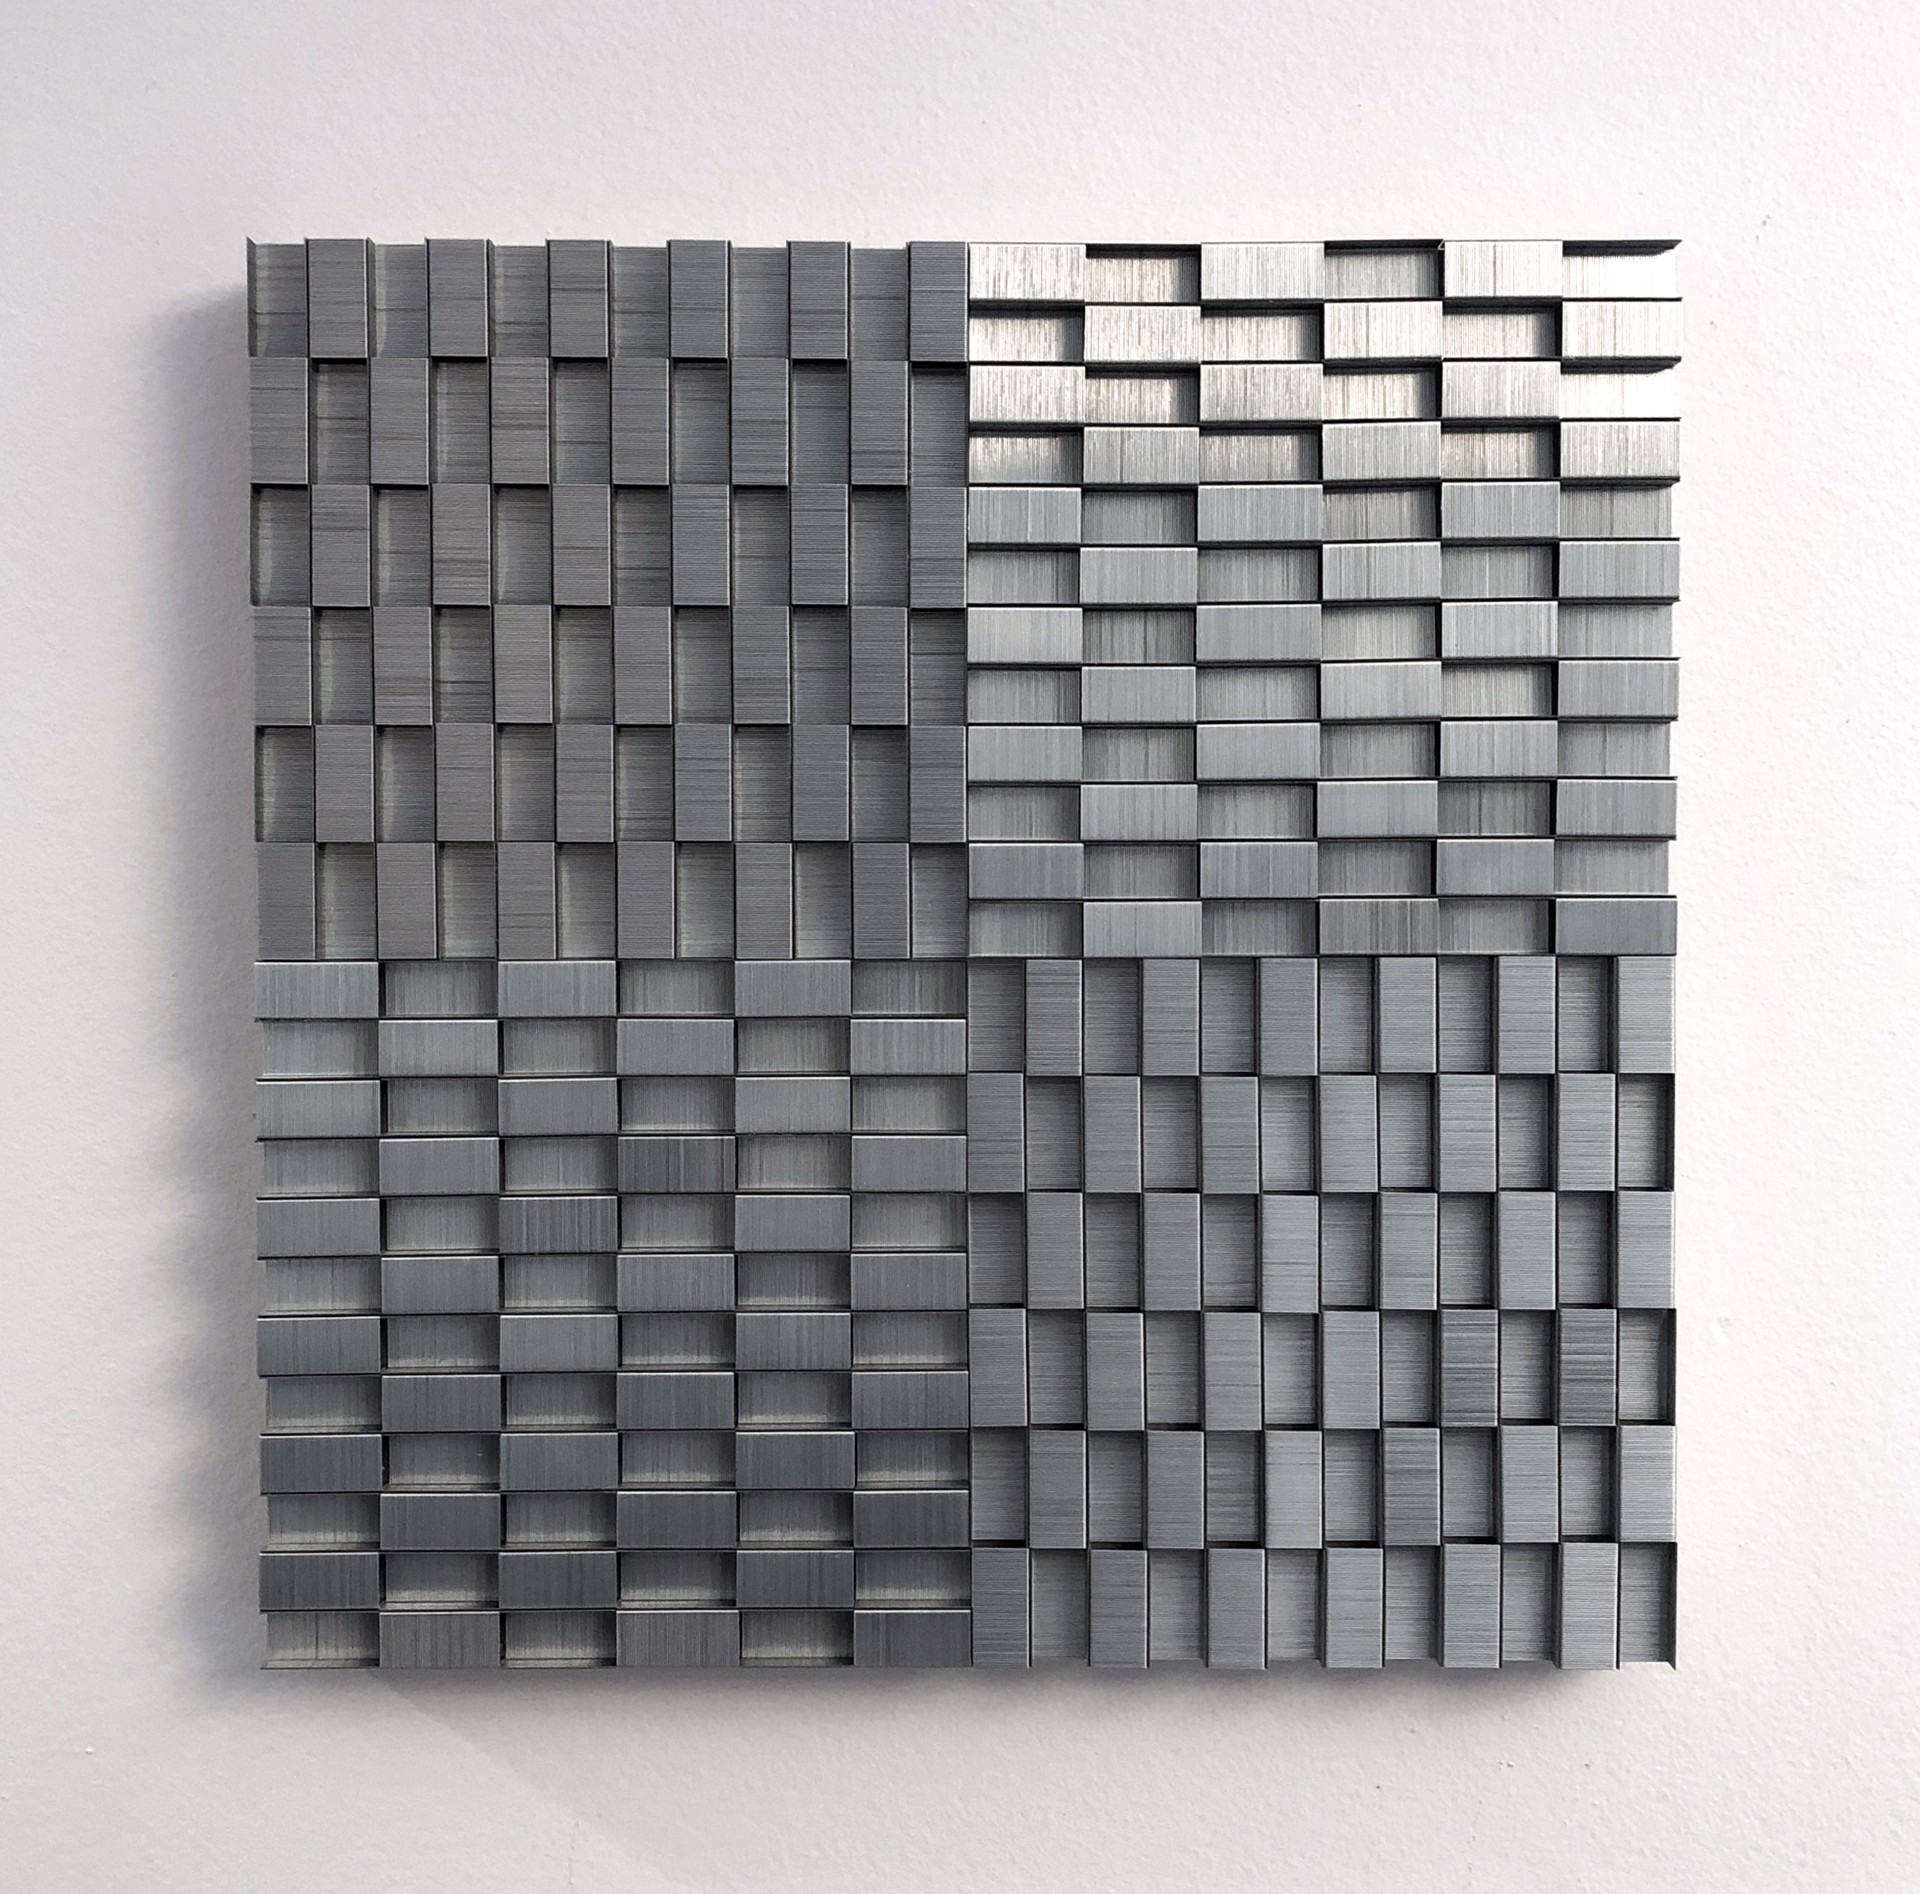 Checkerboard Variation 12x12 No. 7 by Evan Stoler